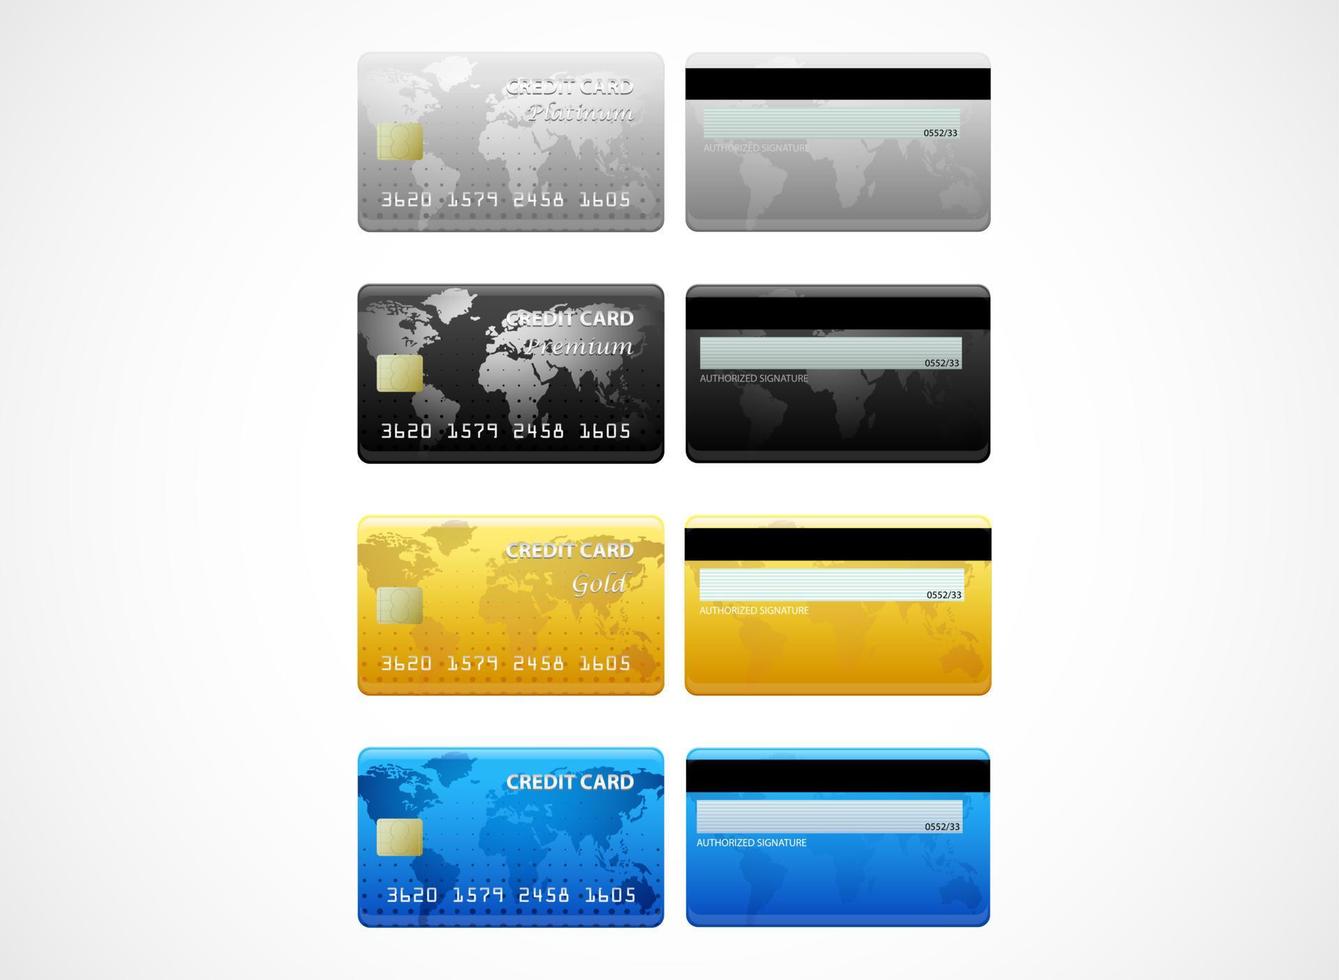 verzameling creditcards op wit wordt geïsoleerd vector